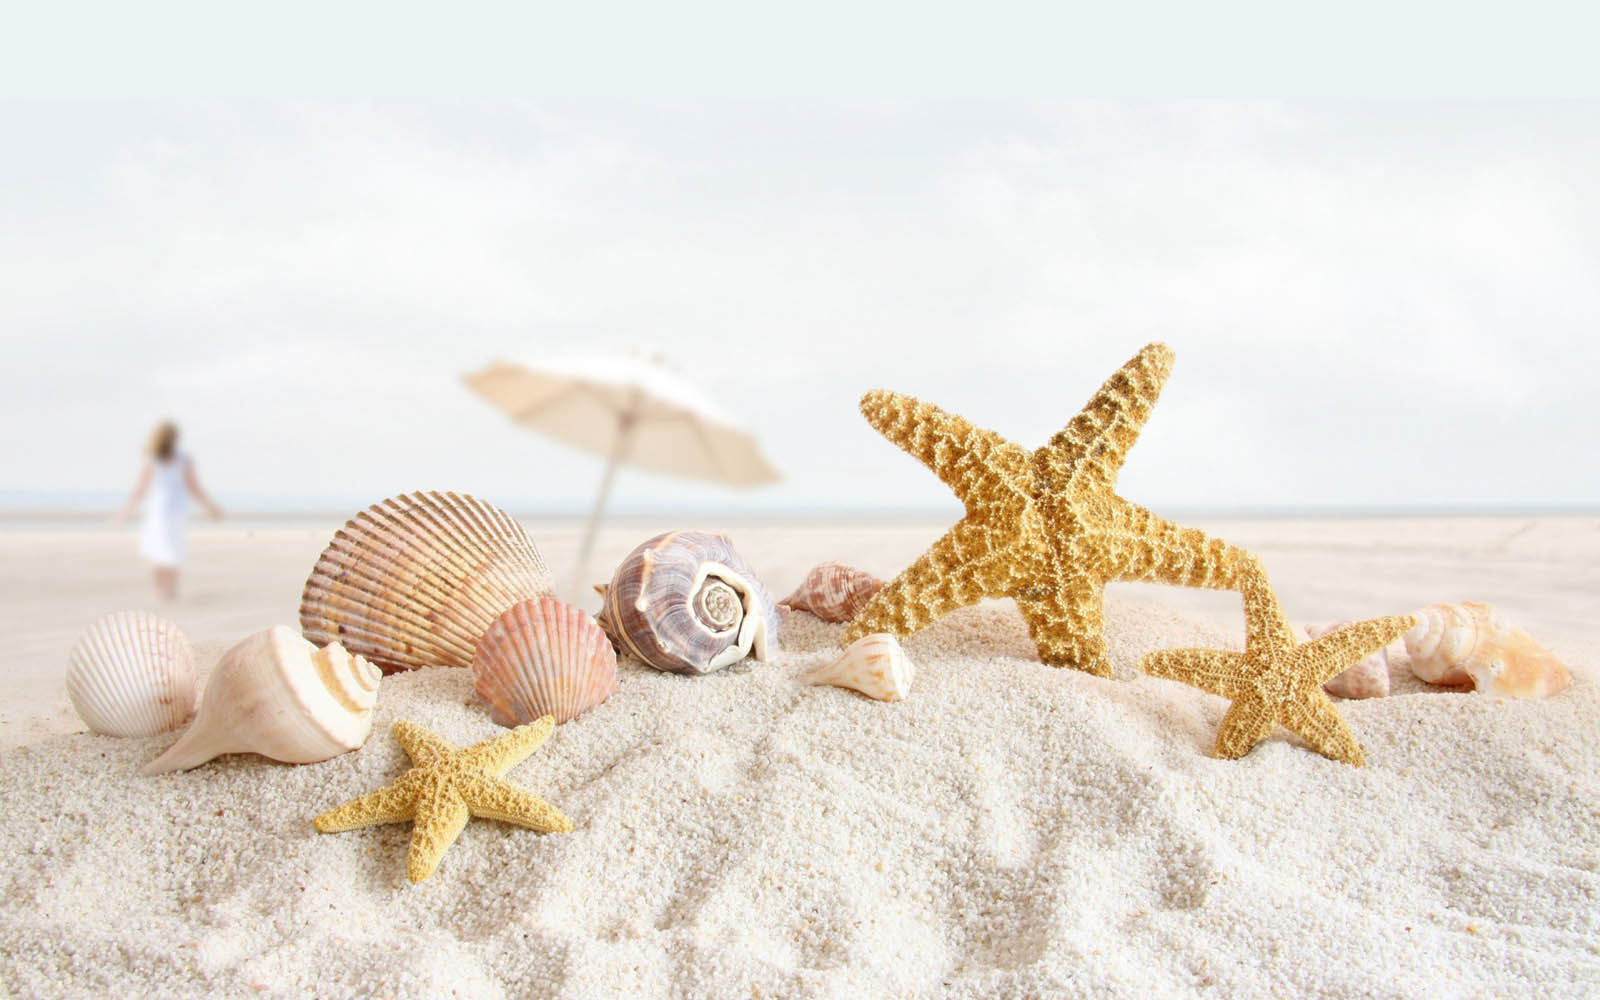 bintang fondo de pantalla,estrella de mar,cáscara,arena,invertebrado,invertebrados marinos